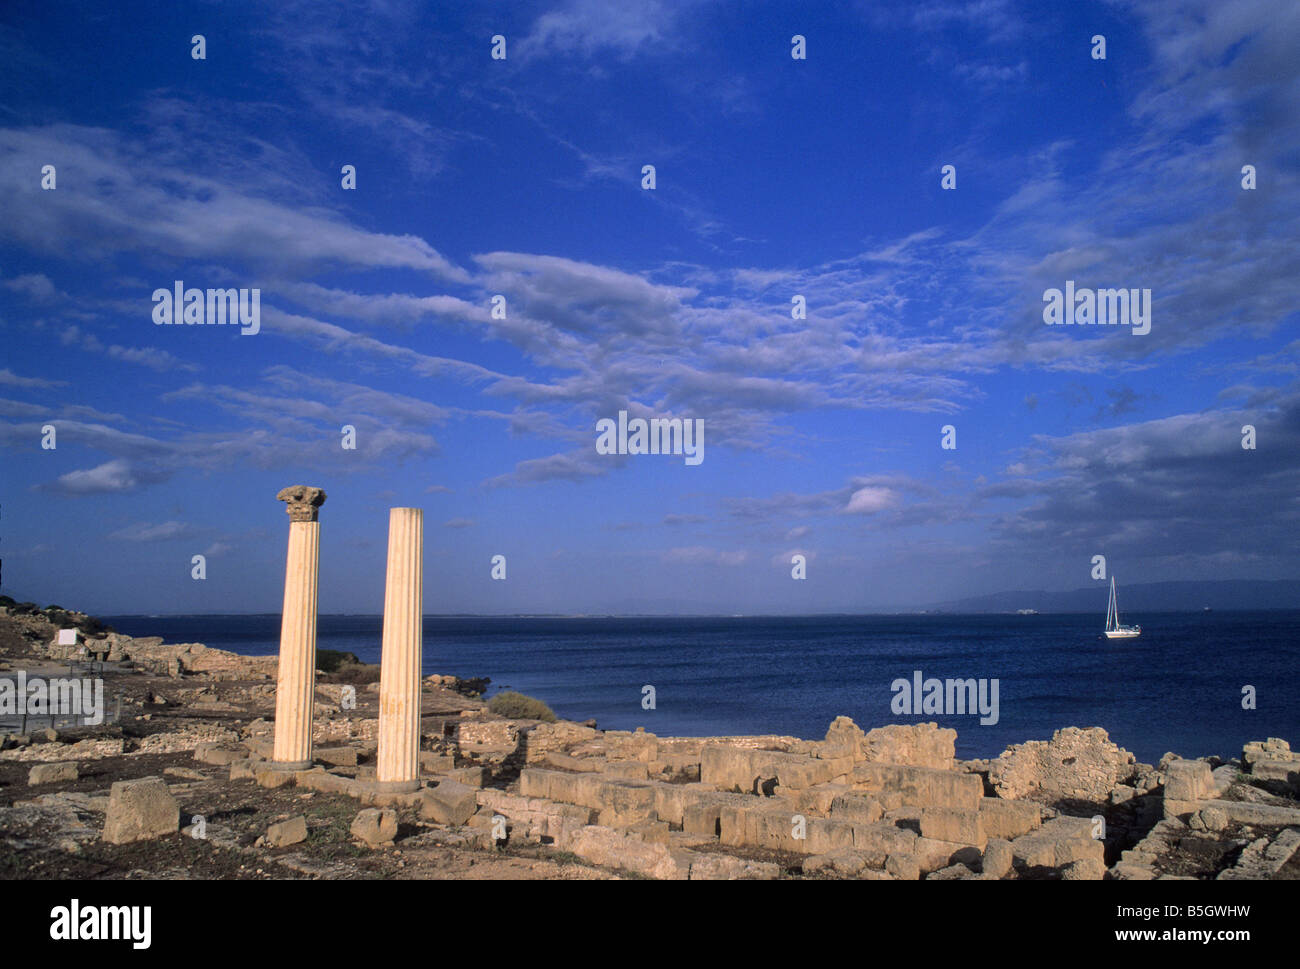 Punica rovine romane della città fondata dai Fenici nel 730 A.C. a Tharros sulla costa della penisola del Sinis, Sardegna, Italia Foto Stock